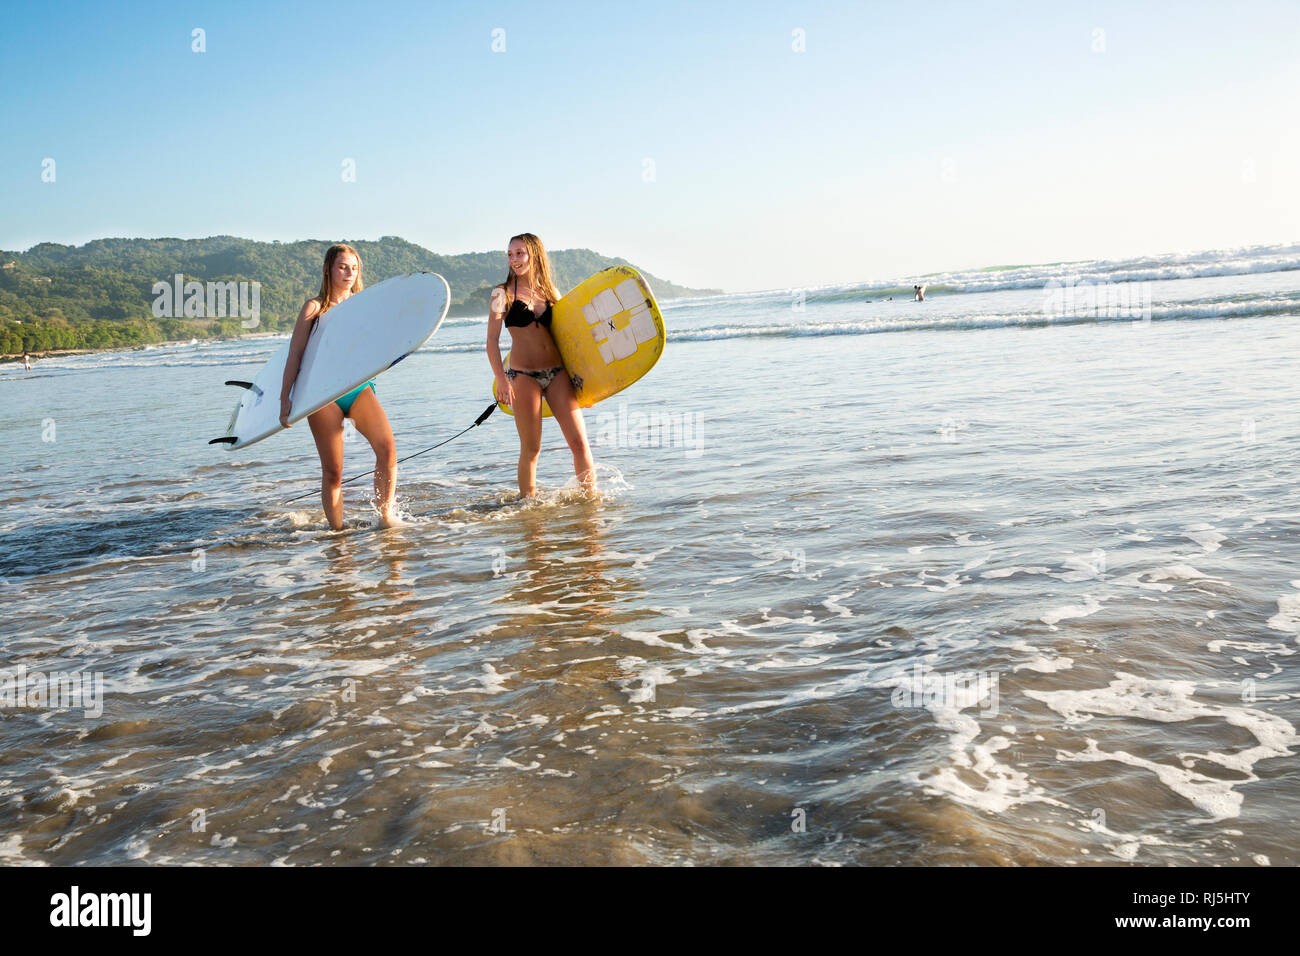 Zwei junge Frauen mit Surfboards Waten in Wasser Stockfoto